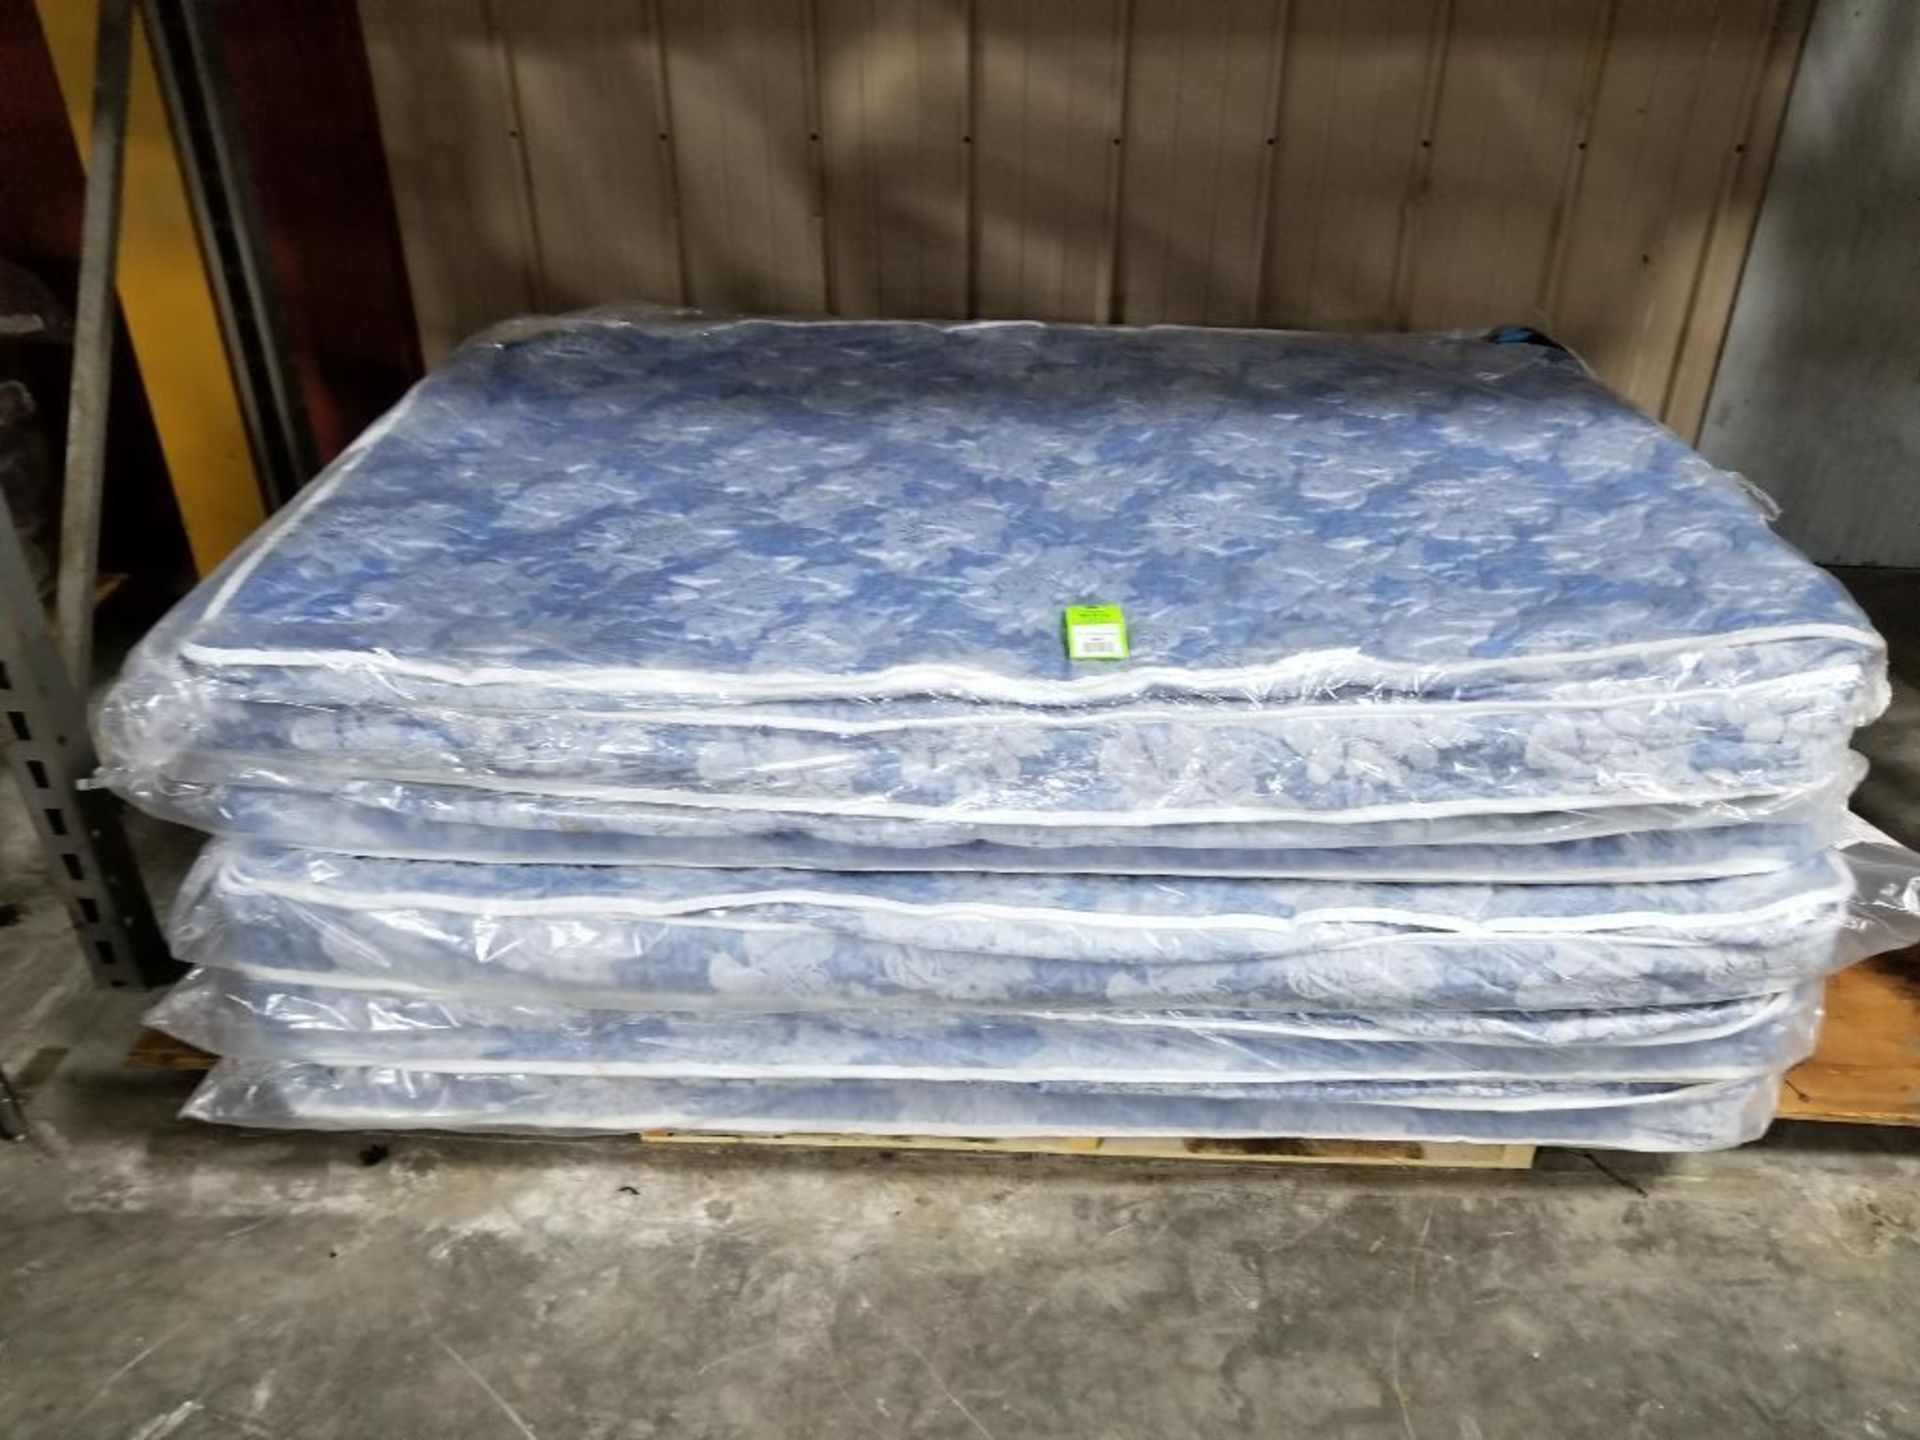 Qty 5 - 52" full size Flexsteel air mattress. Majestic Air Coil. new.